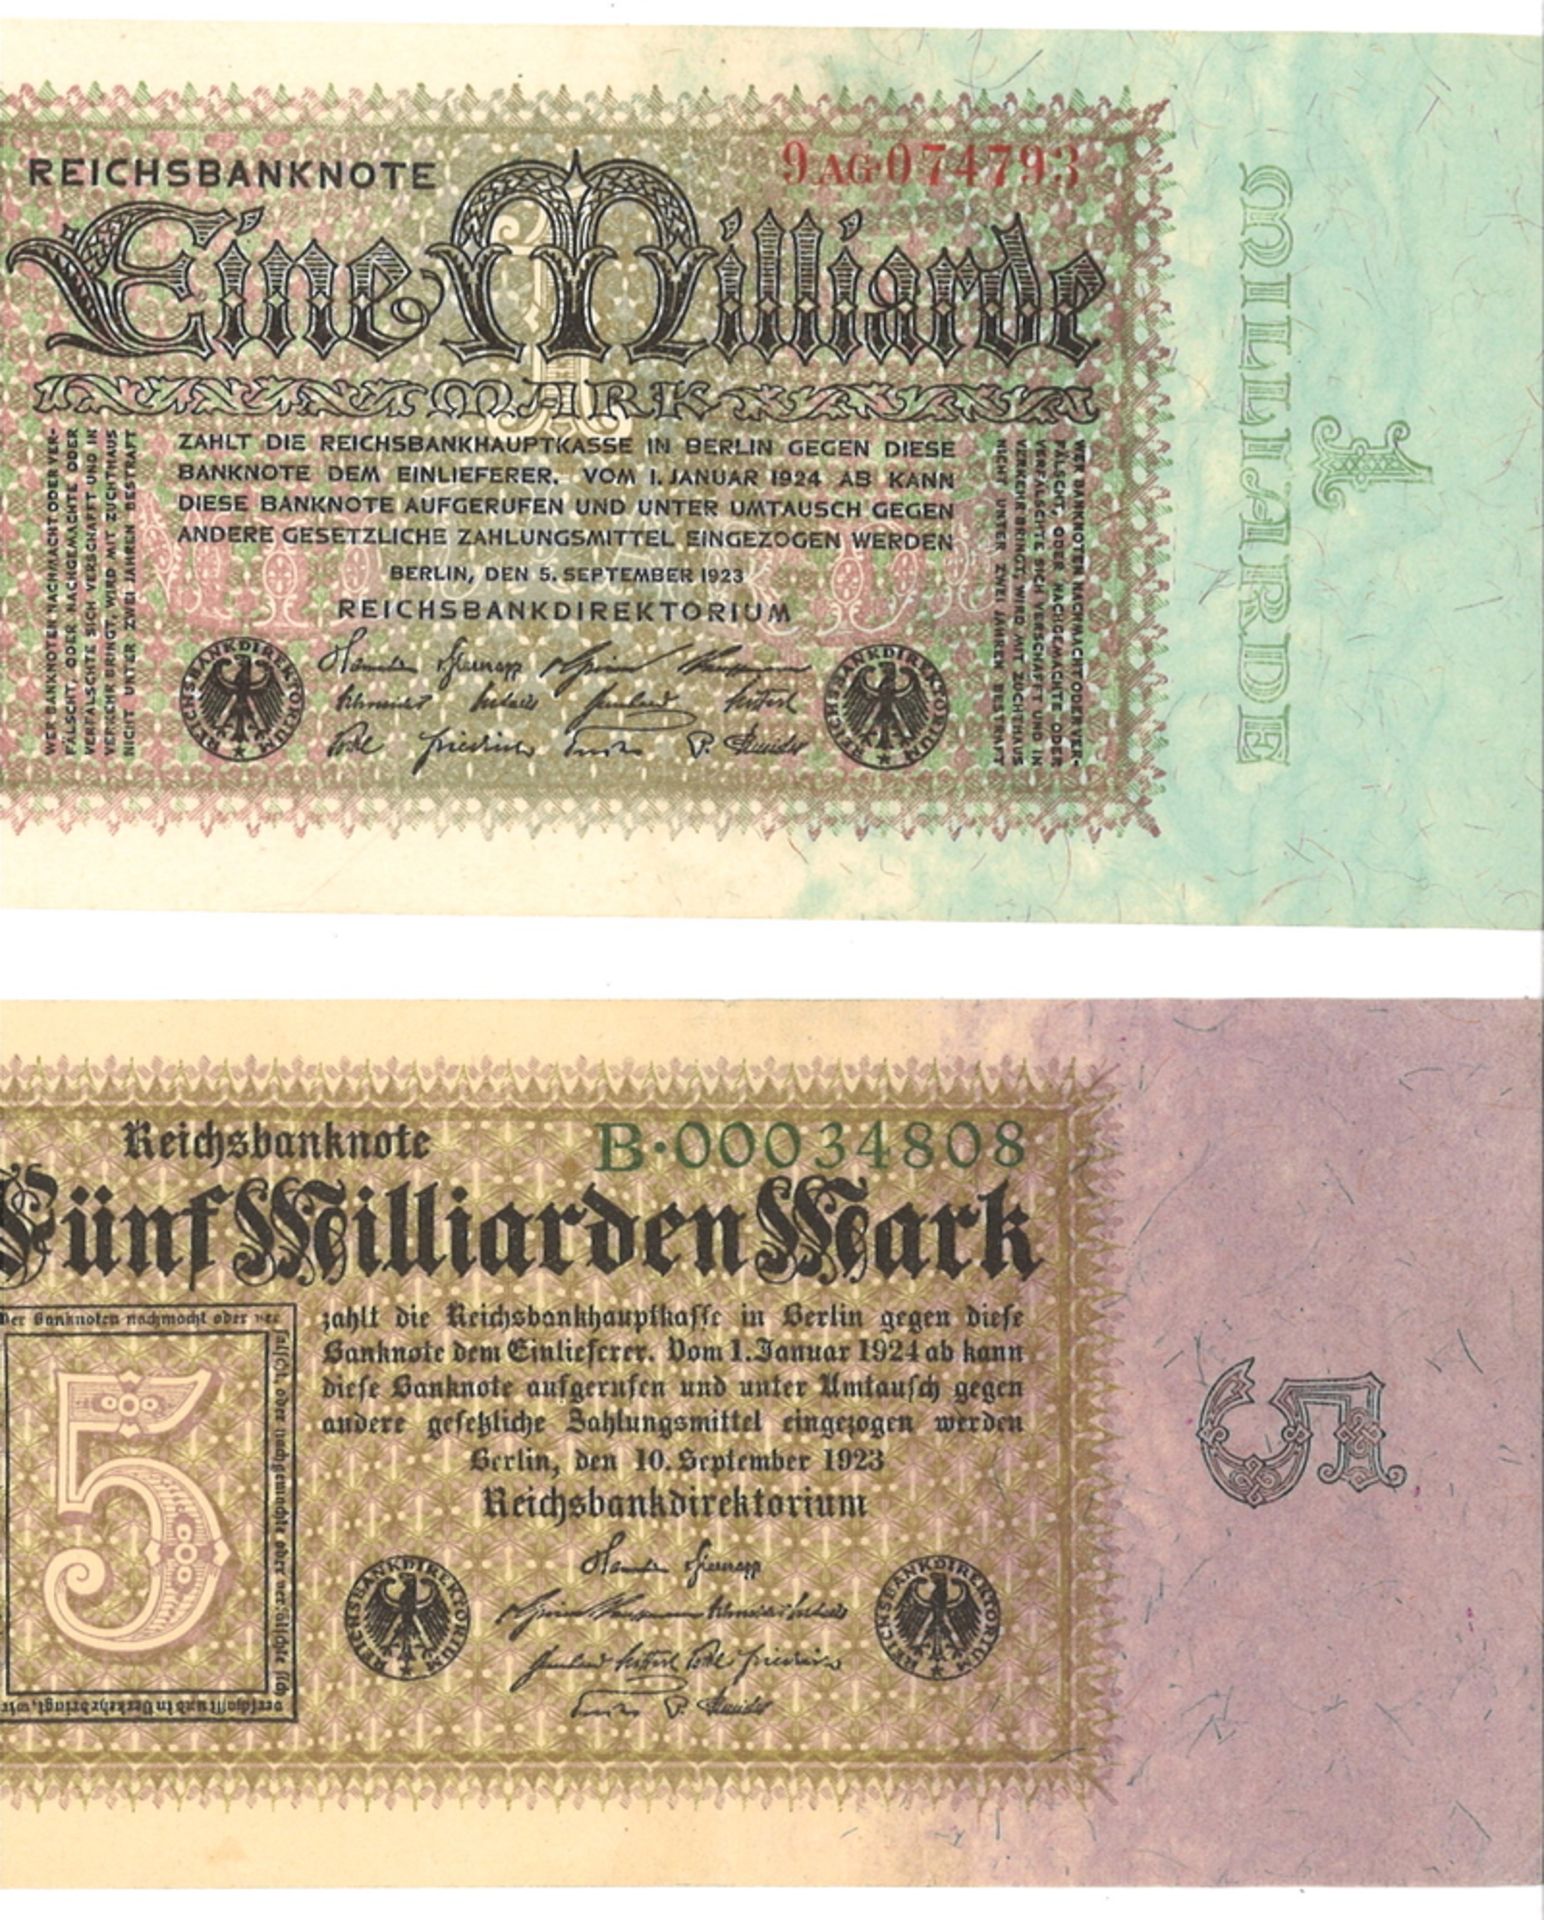 Lot von 2 Reichsbanknote, 1x "Eine Milliarde" 9 AG 74793, 1x "Fünf Milliarden Mark" B-00034808.